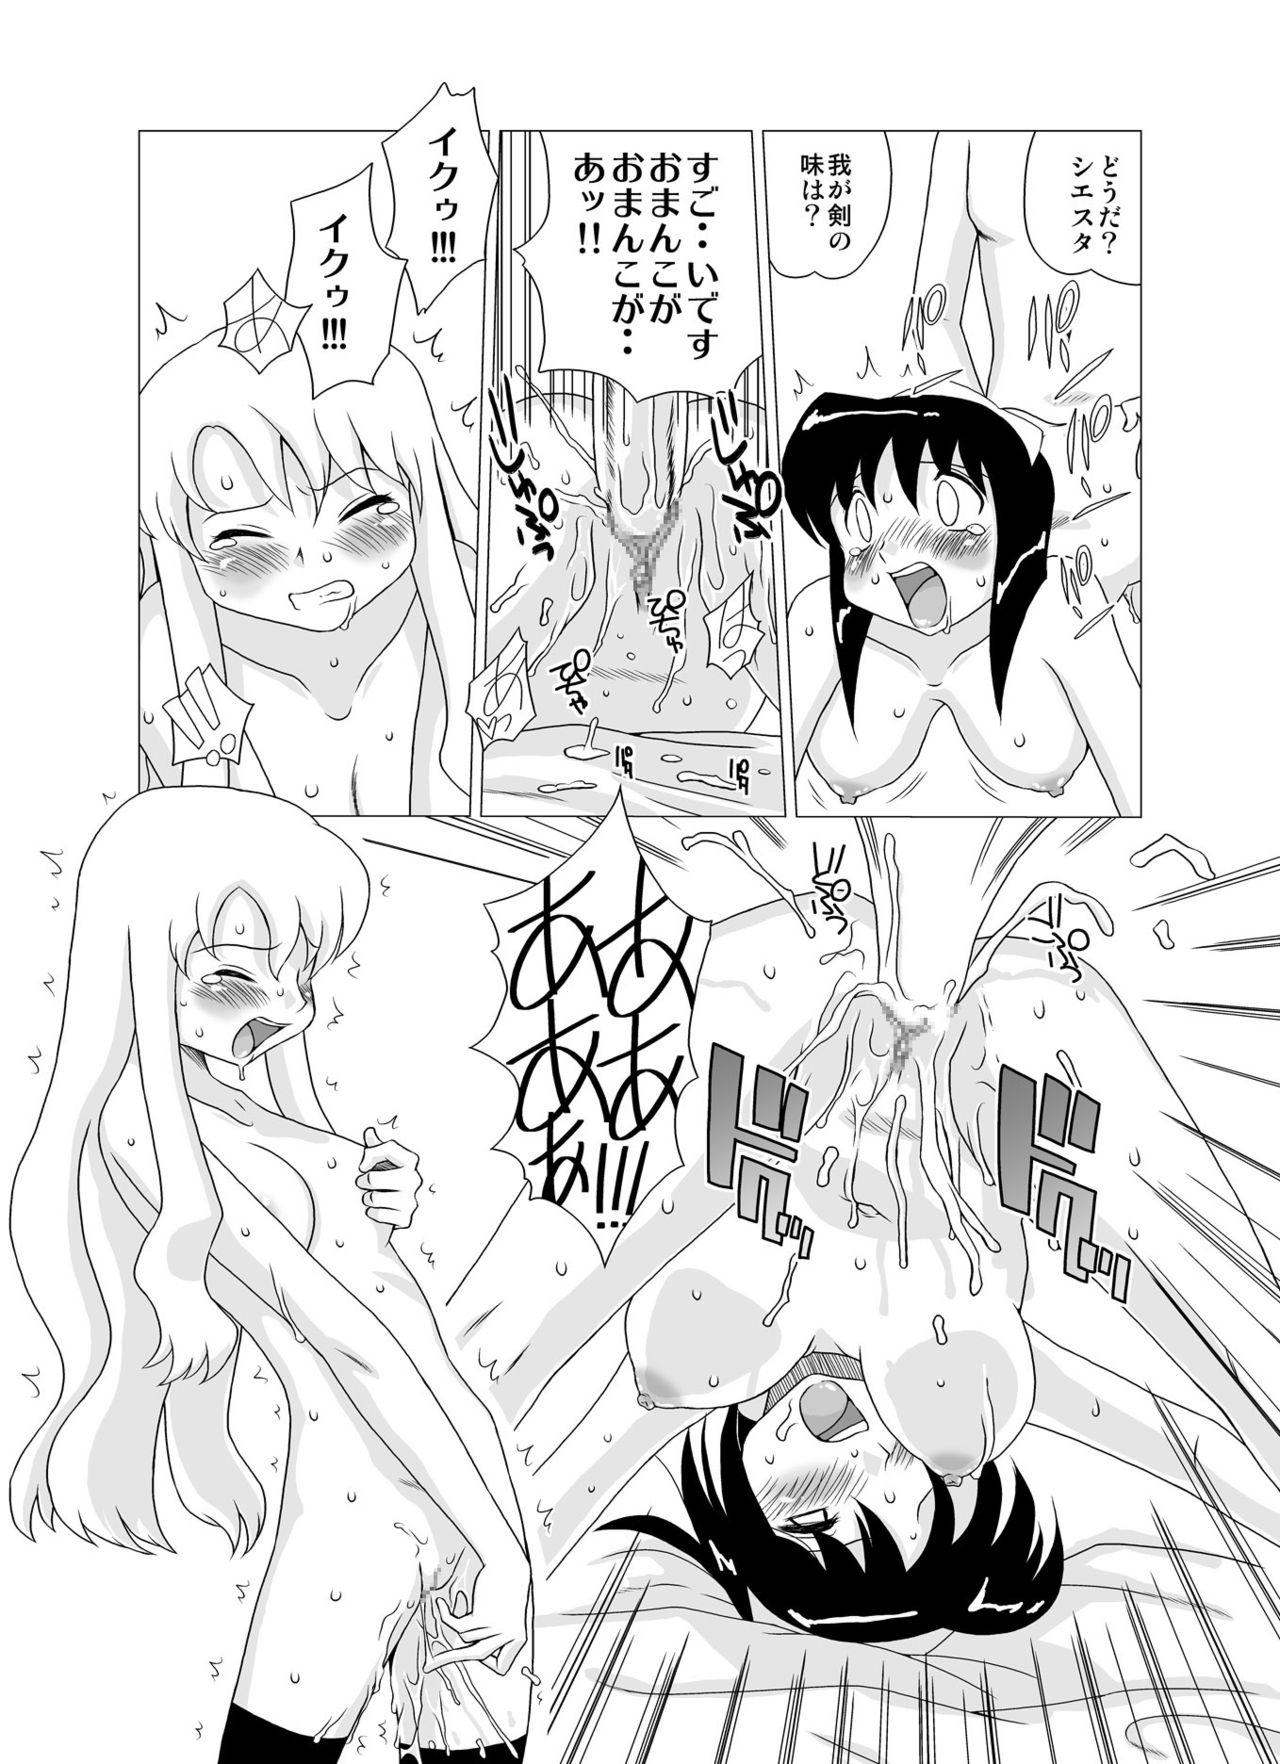 Gostosa Zero no Tsukai Mara - Zero no tsukaima Female Orgasm - Page 8